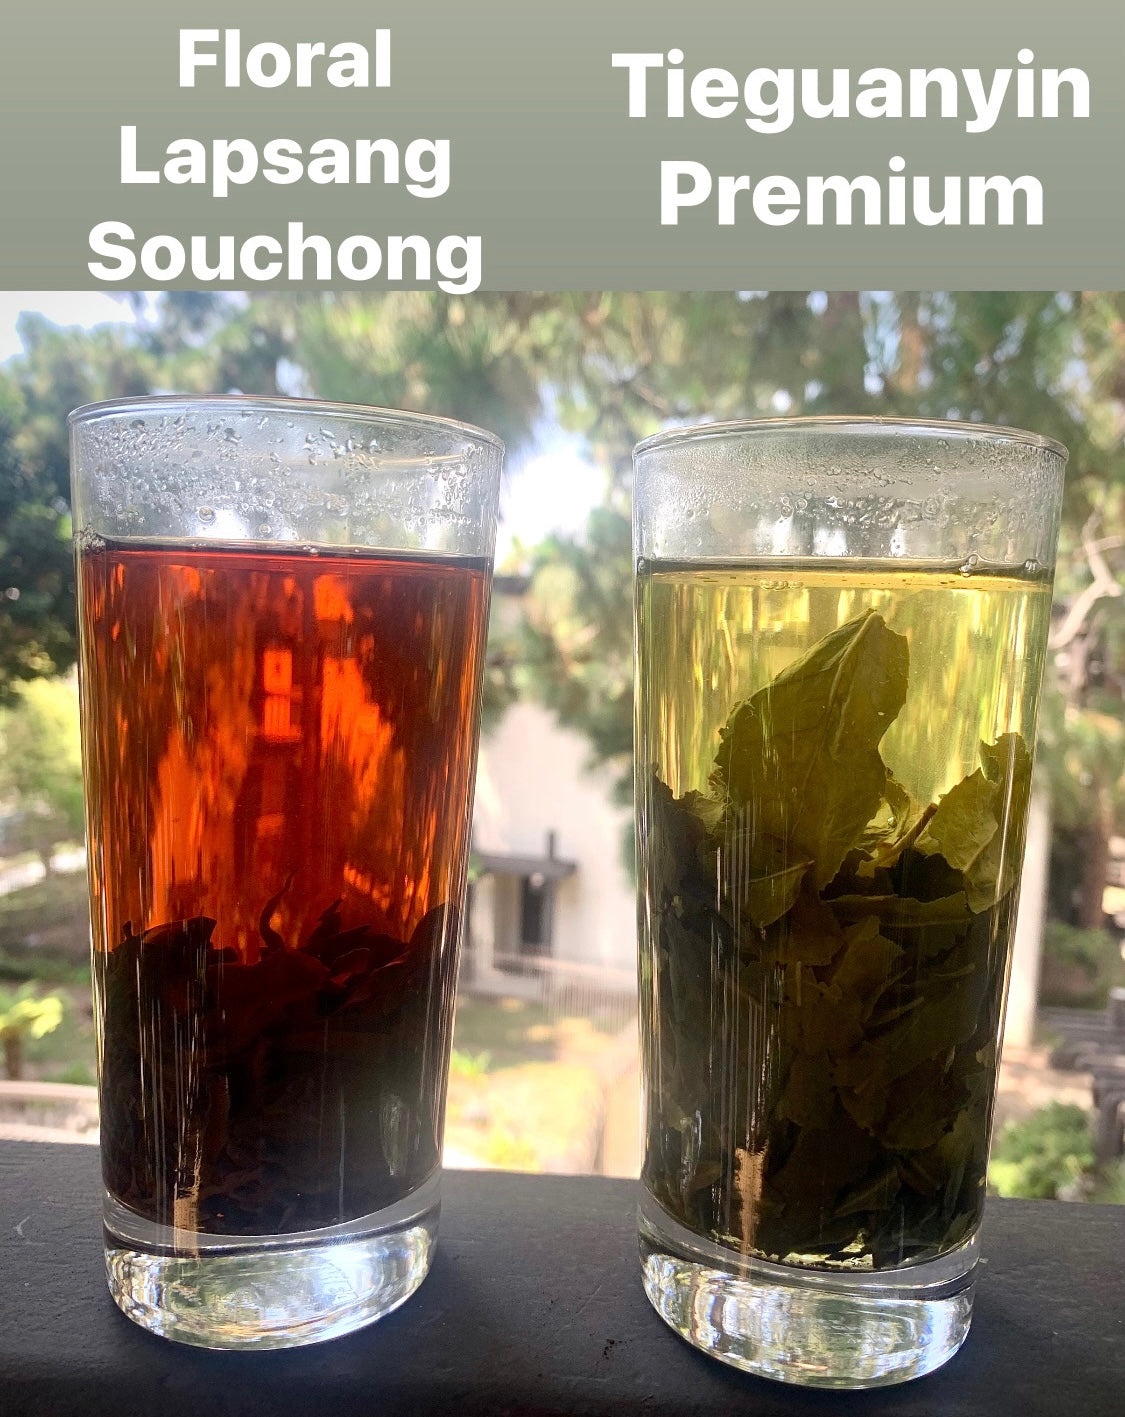 Lapsang Souchong Premium (Floral) Black Tea